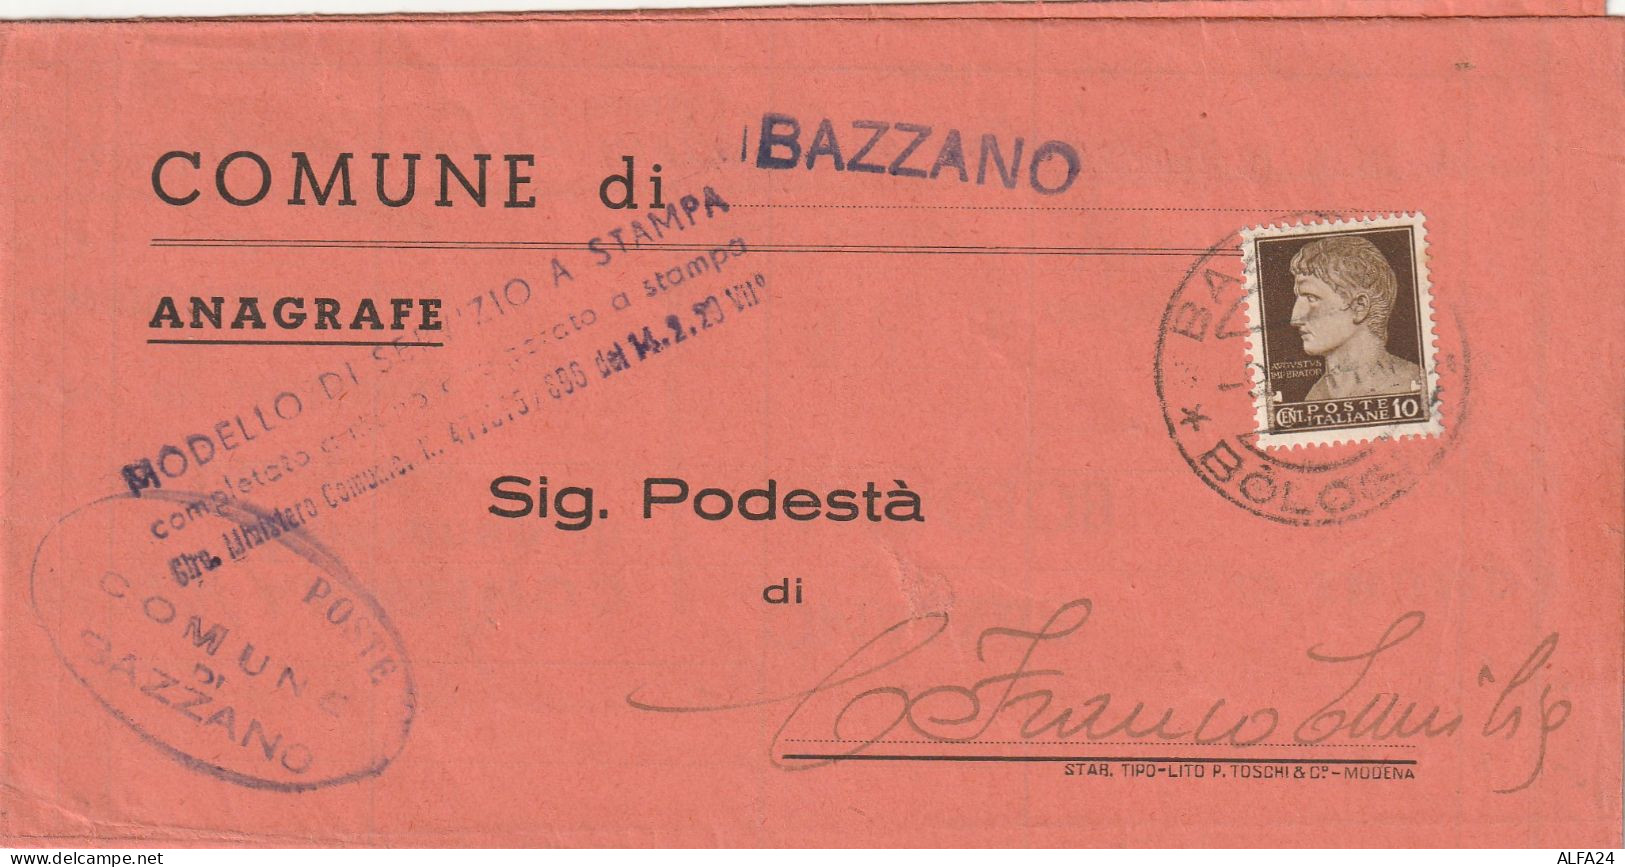 LETTERA DOPPIA SPEDIZIONE 1944 RSI C.25--C.10 TIMBRO CASTELFRANCO EMILIA MODENA BAZZANO BOLOGNA (YK523 - Marcophilia